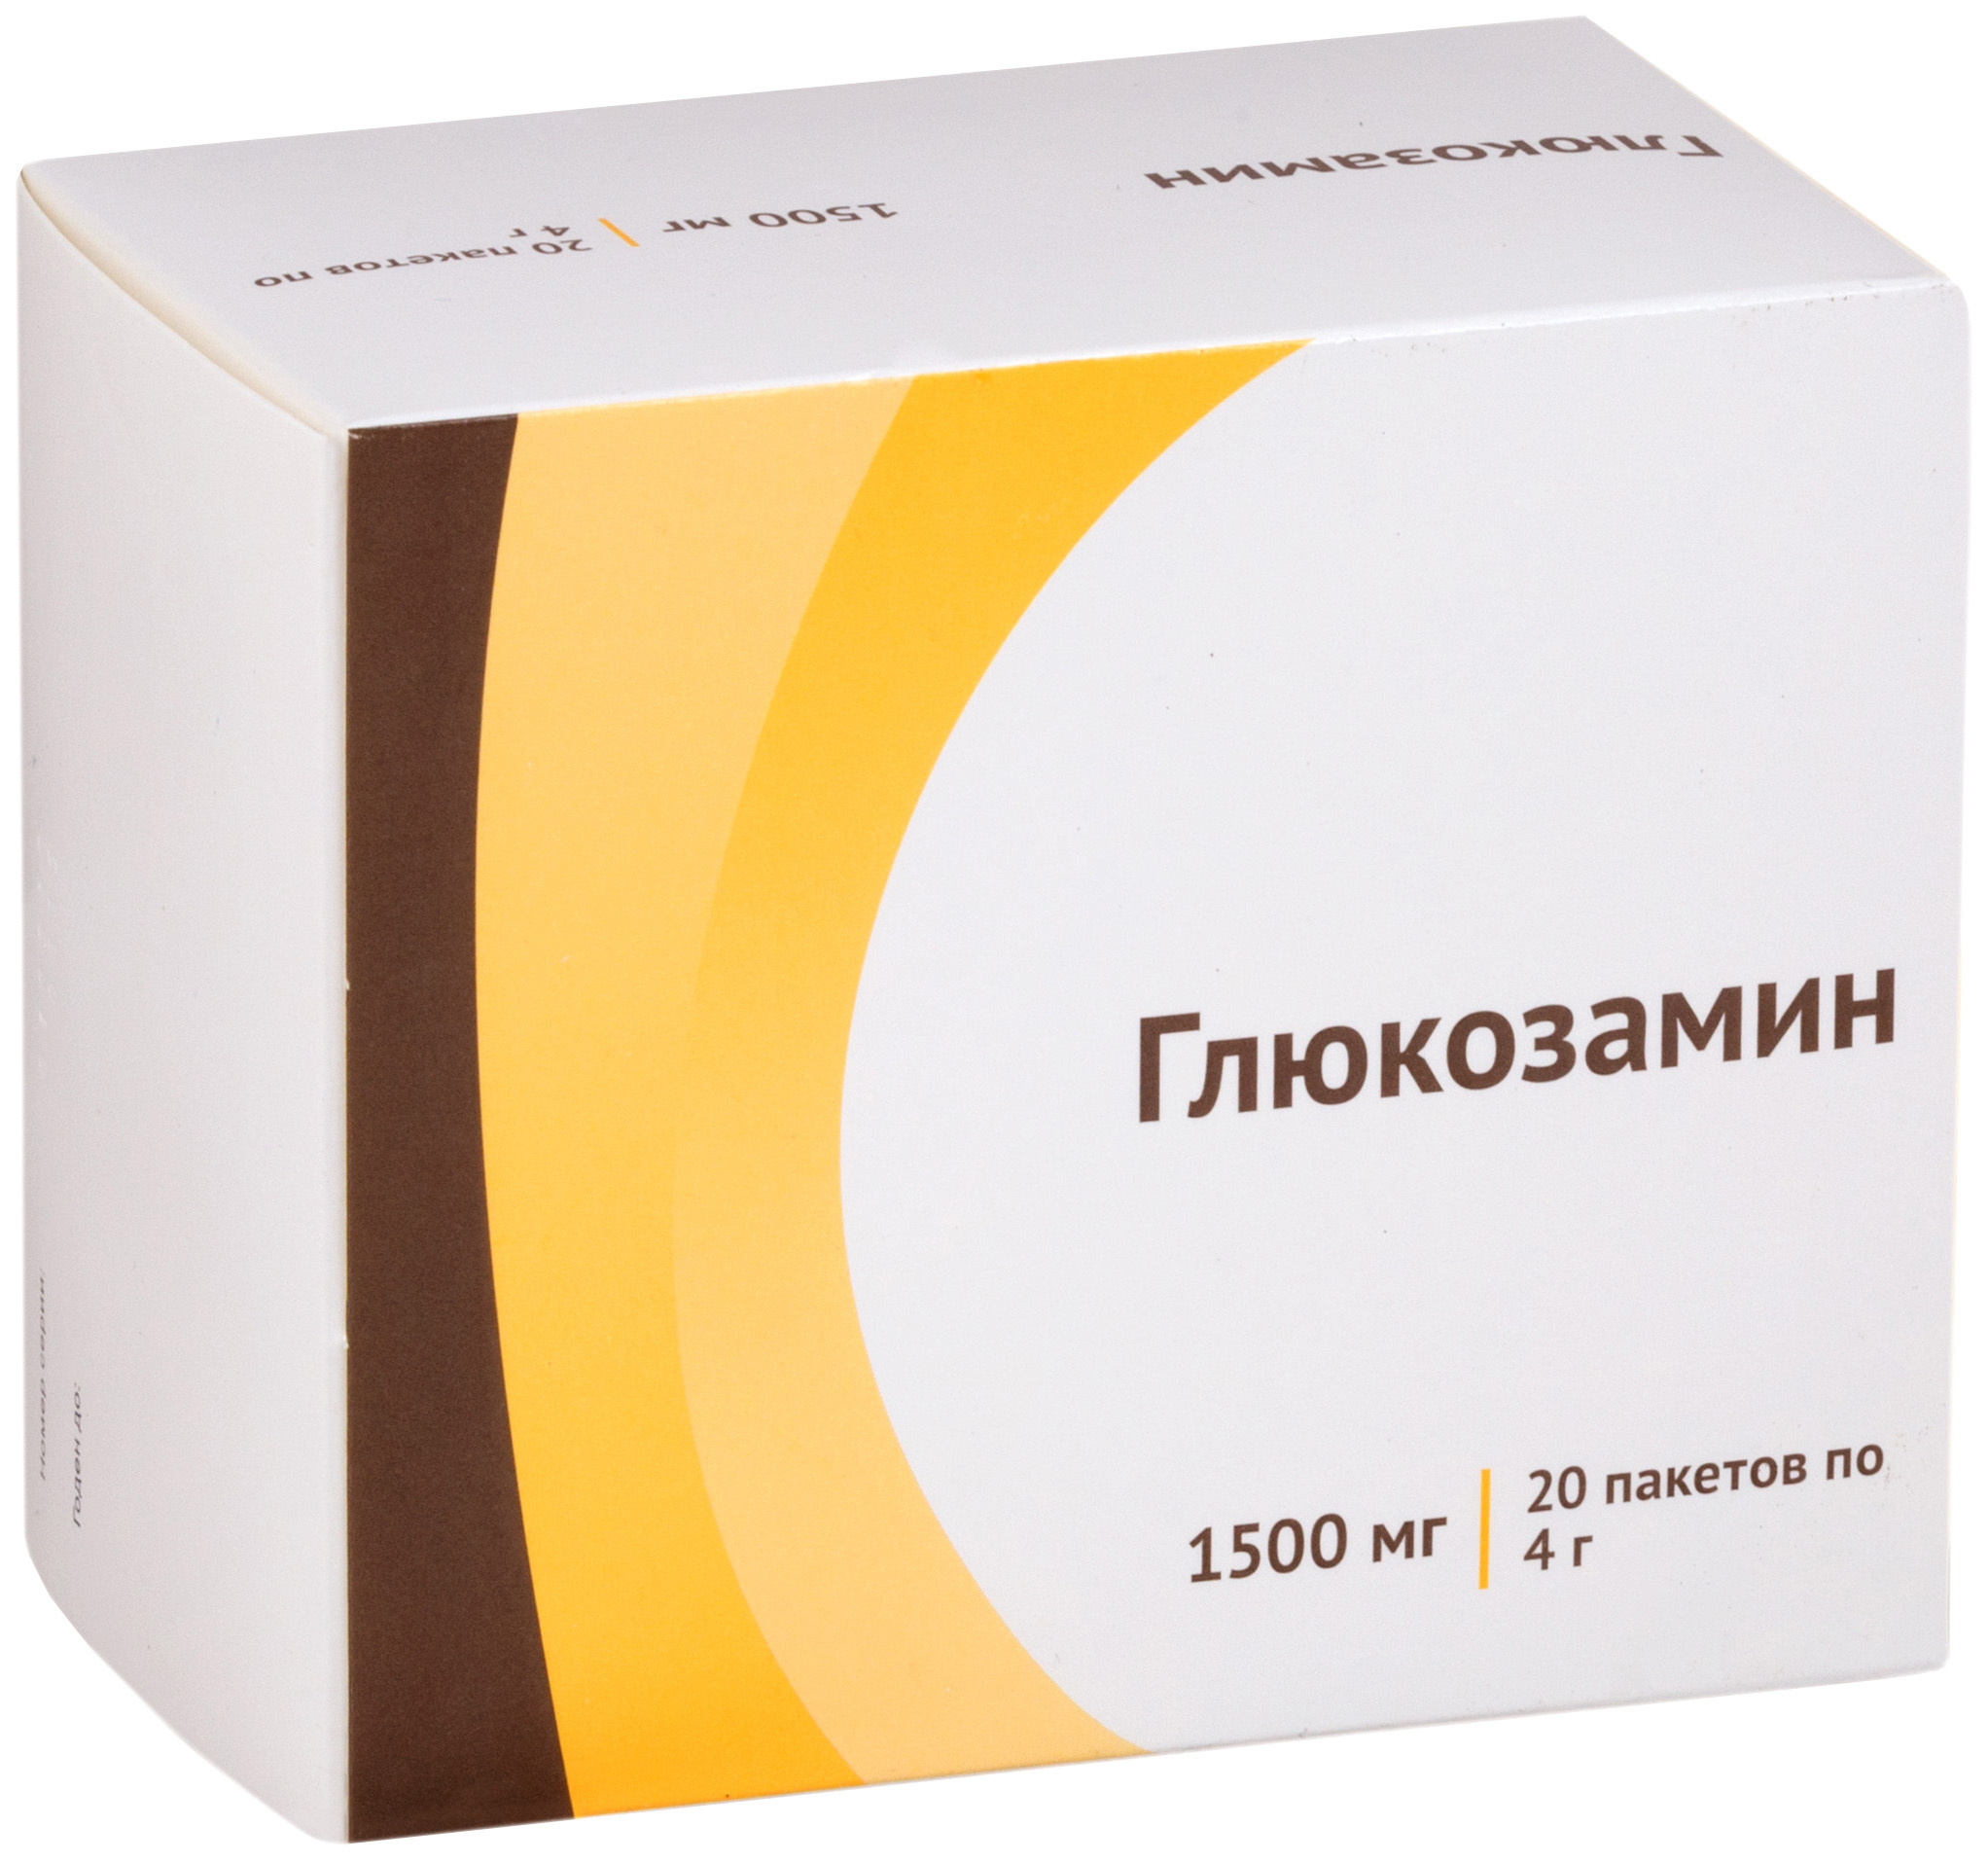 Купить Глюкозамин 1500 мг, Глюкозамин порошок для приготовления раствора для приема внутрь 1500 мг 20 шт., Атолл, Россия